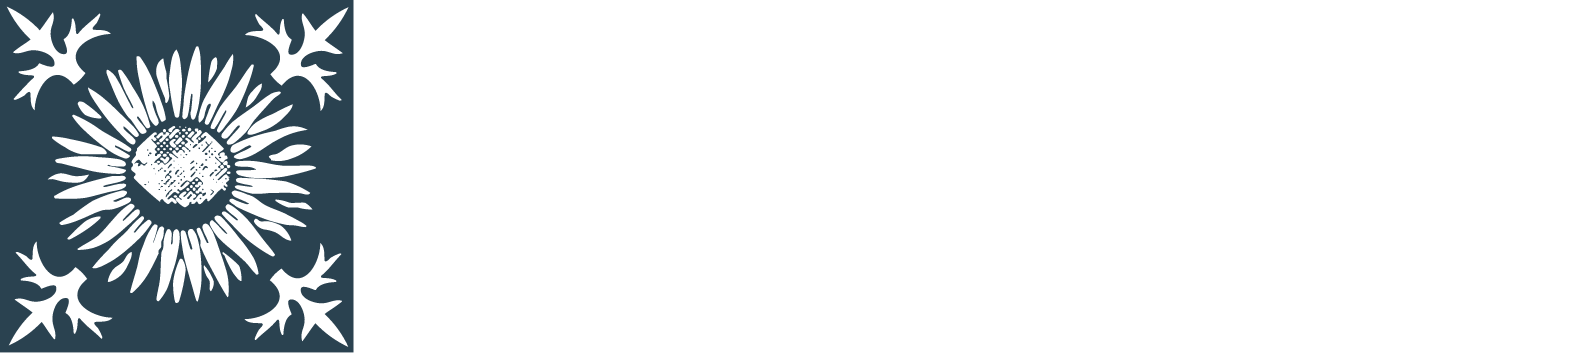 Rhön-Klinikum logo grand pour les fonds sombres (PNG transparent)